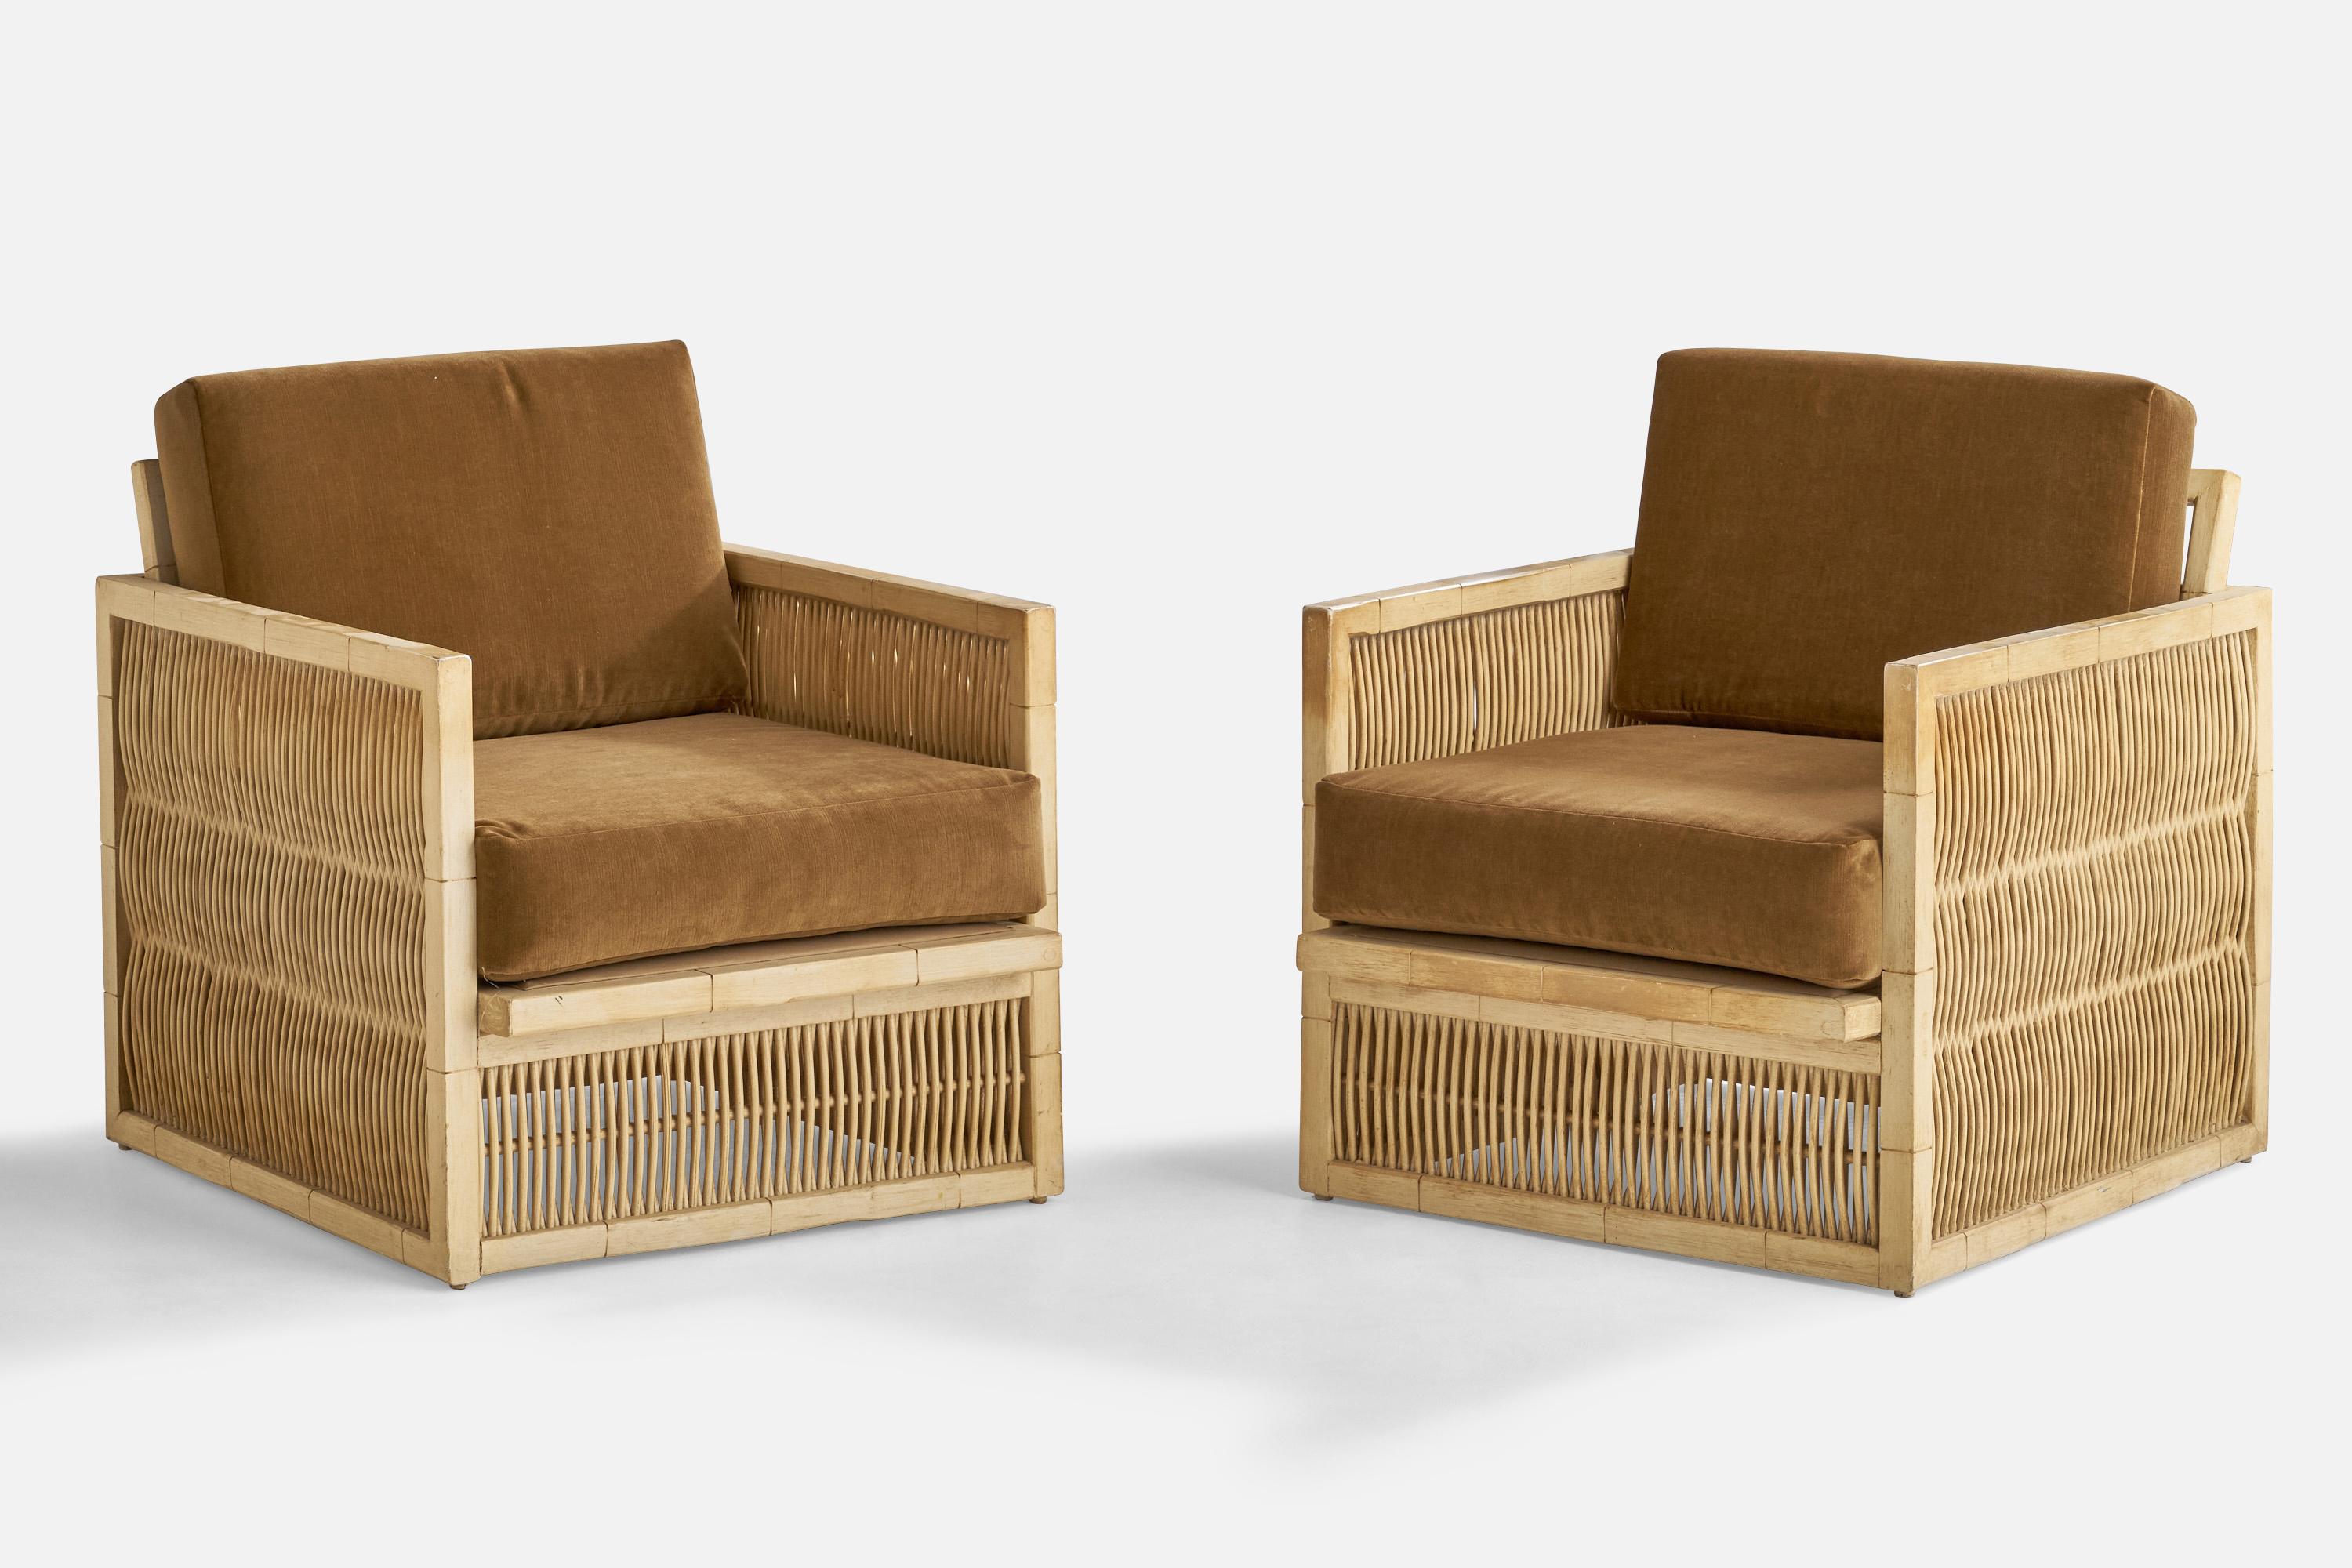  Paire de chaises longues en chêne cérusé, bambou et velours gris brun, conçues et produites aux États-Unis, années 1960.

Hauteur du siège : 17.25